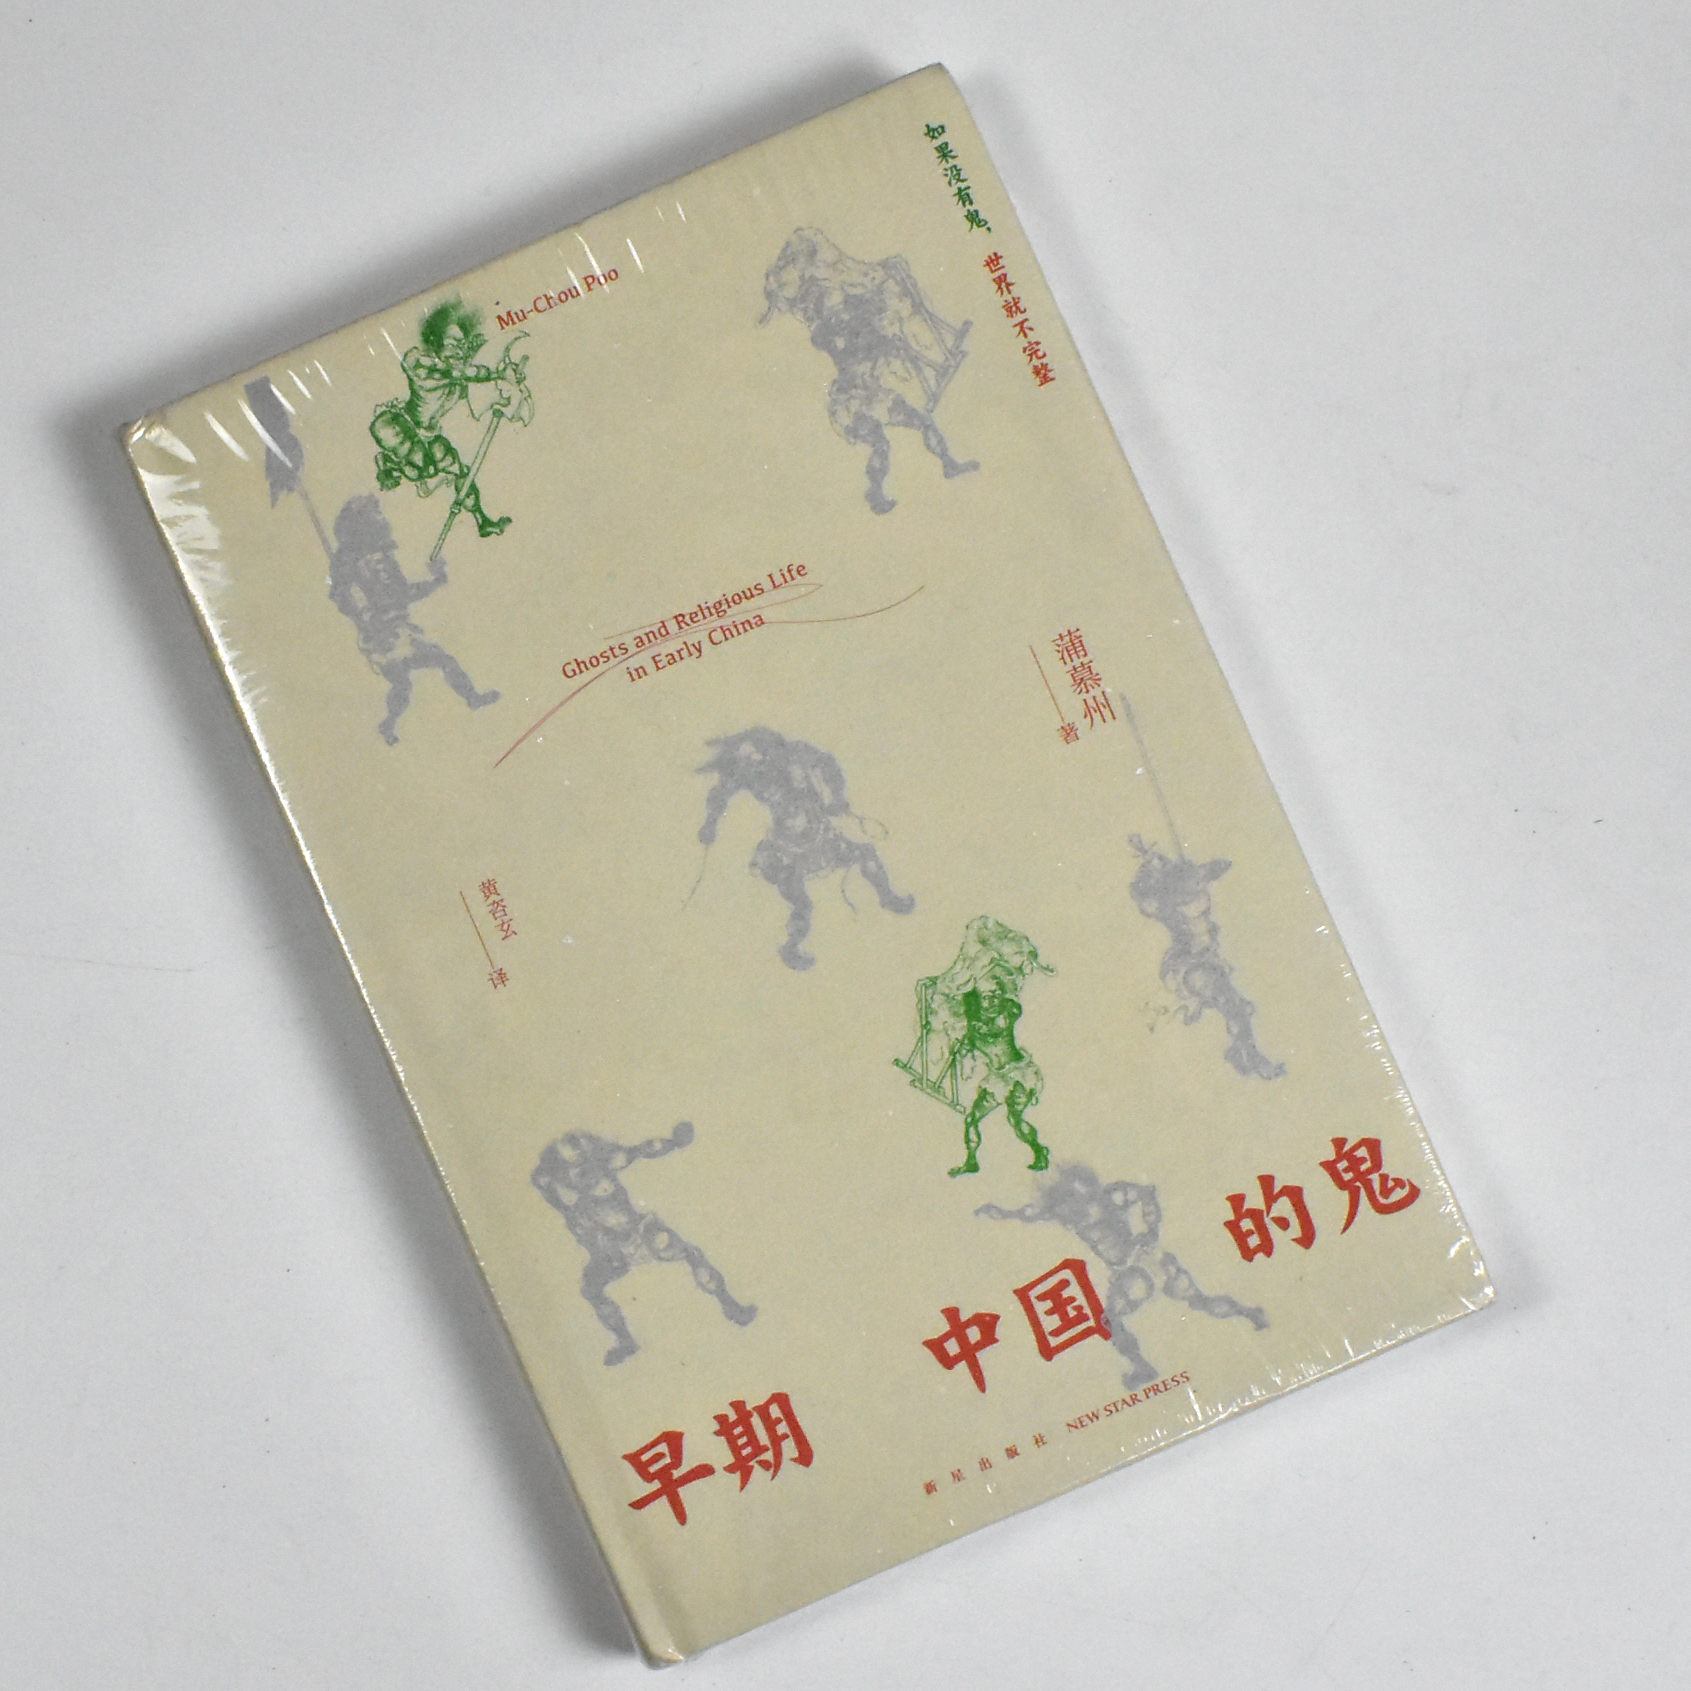 早期中国的鬼  正版全新作者: 蒲慕州 出版社: 新星出版社 9787513352109